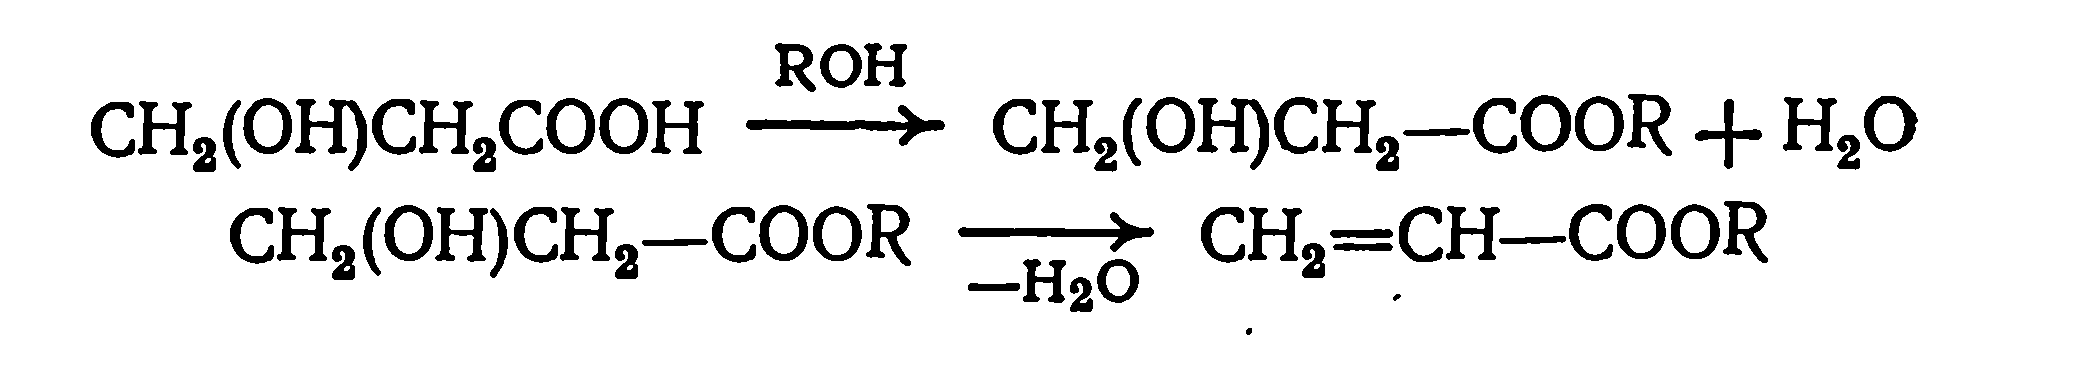 этерификация метакриловой кислоты спиртом и дегидратация эфира гидракриловой кислоты